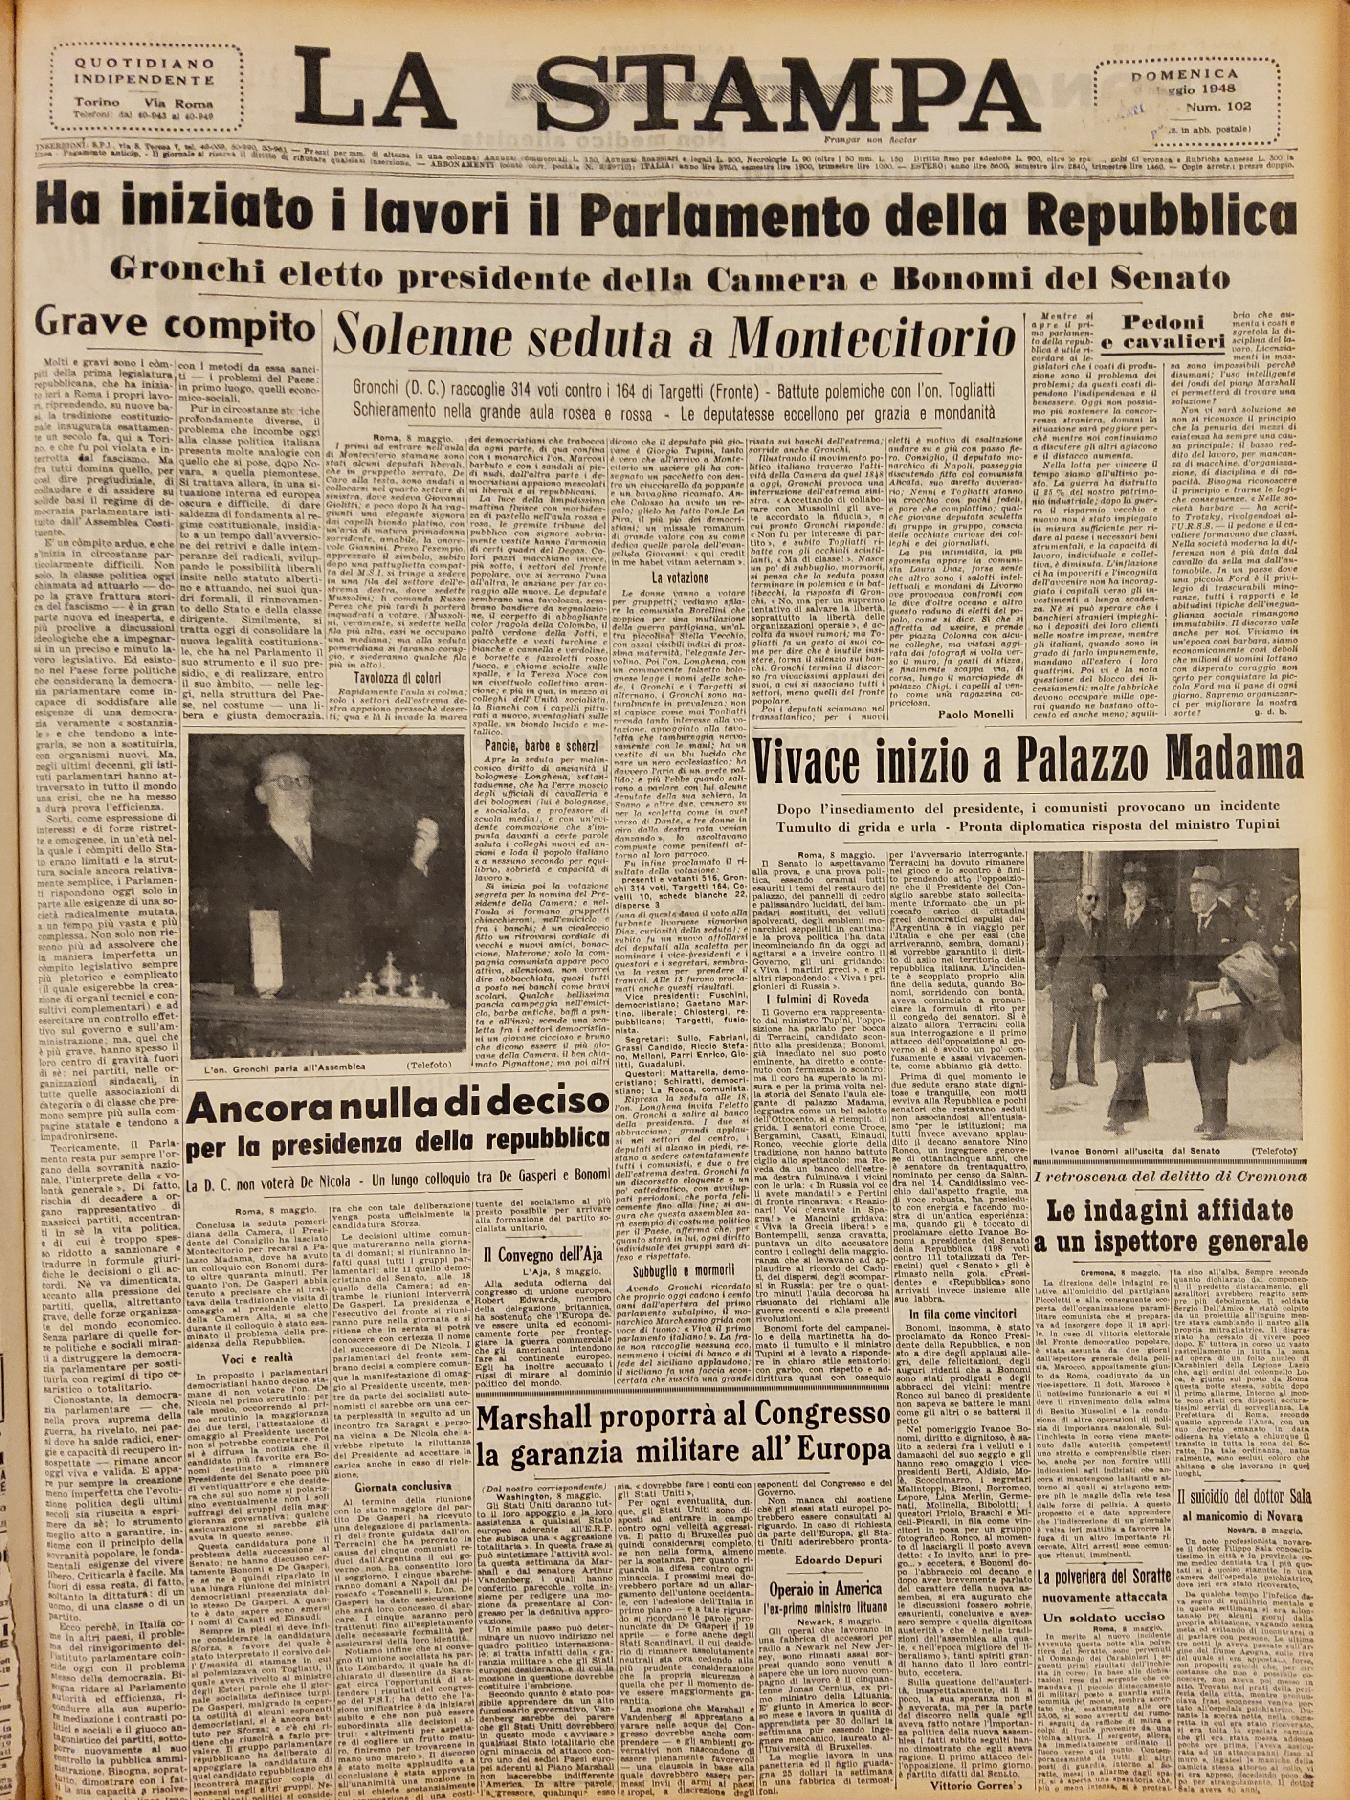 9 maggio 1948 - Prima pagina del quotidiano "La Stampa".